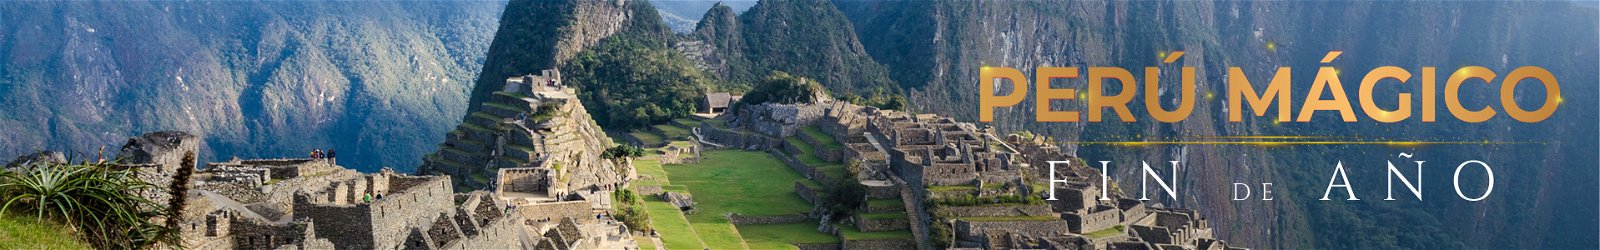 Viajes a Europa Perú Mágico Fin de Año